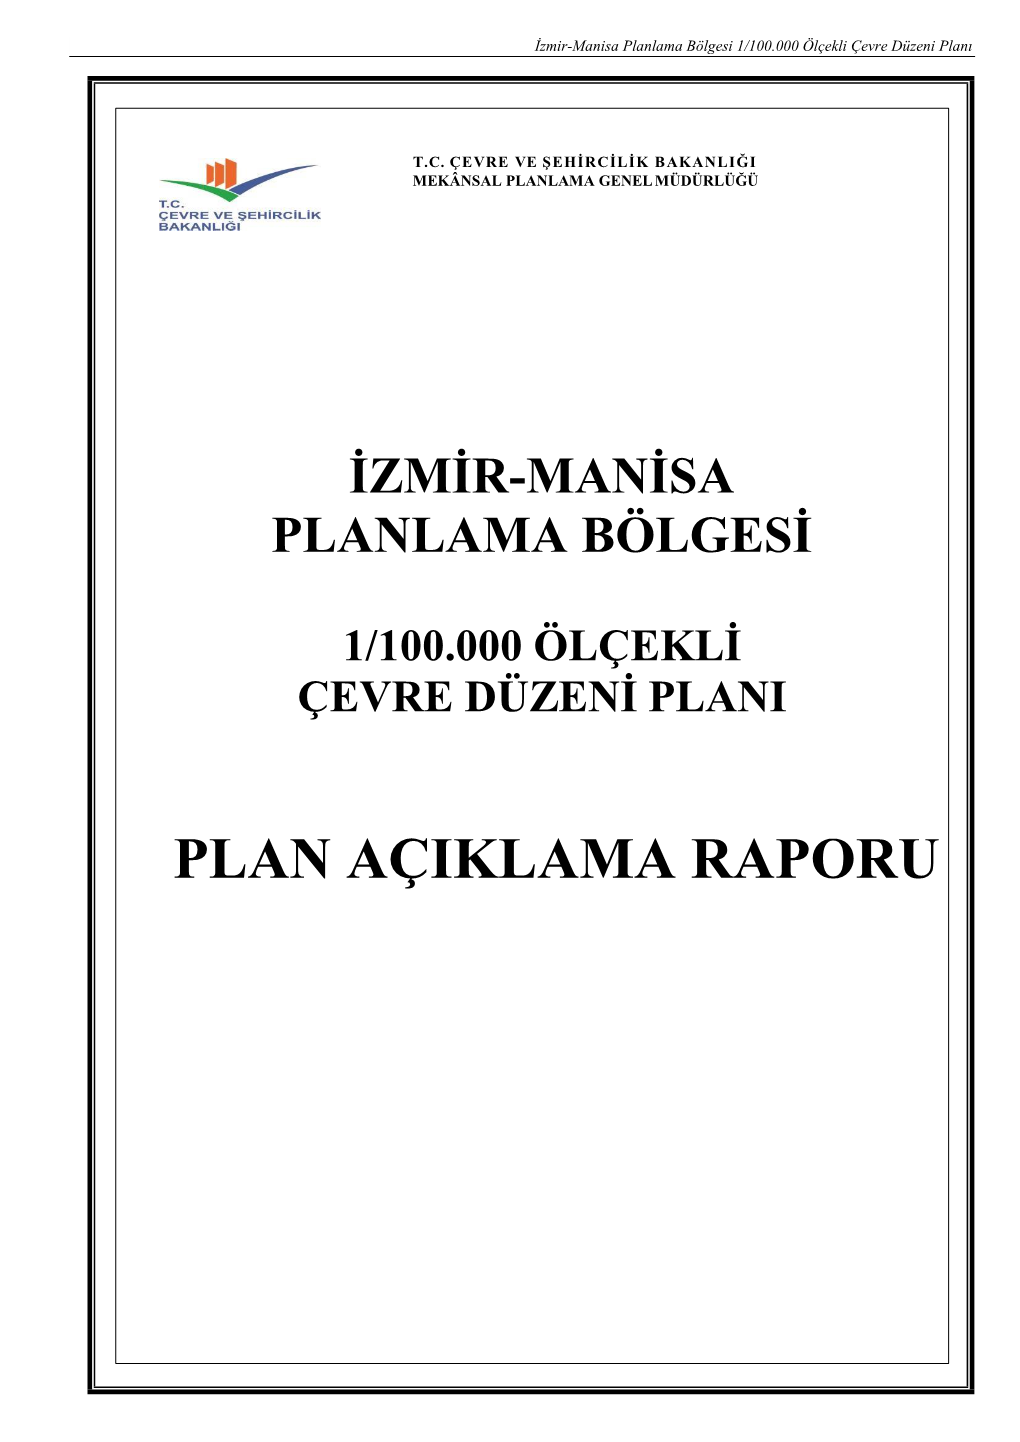 PLAN AÇIKLAMA RAPORU İzmir-Manisa Planlama Bölgesi 1/100.000 Ölçekli Çevre Düzeni Planı